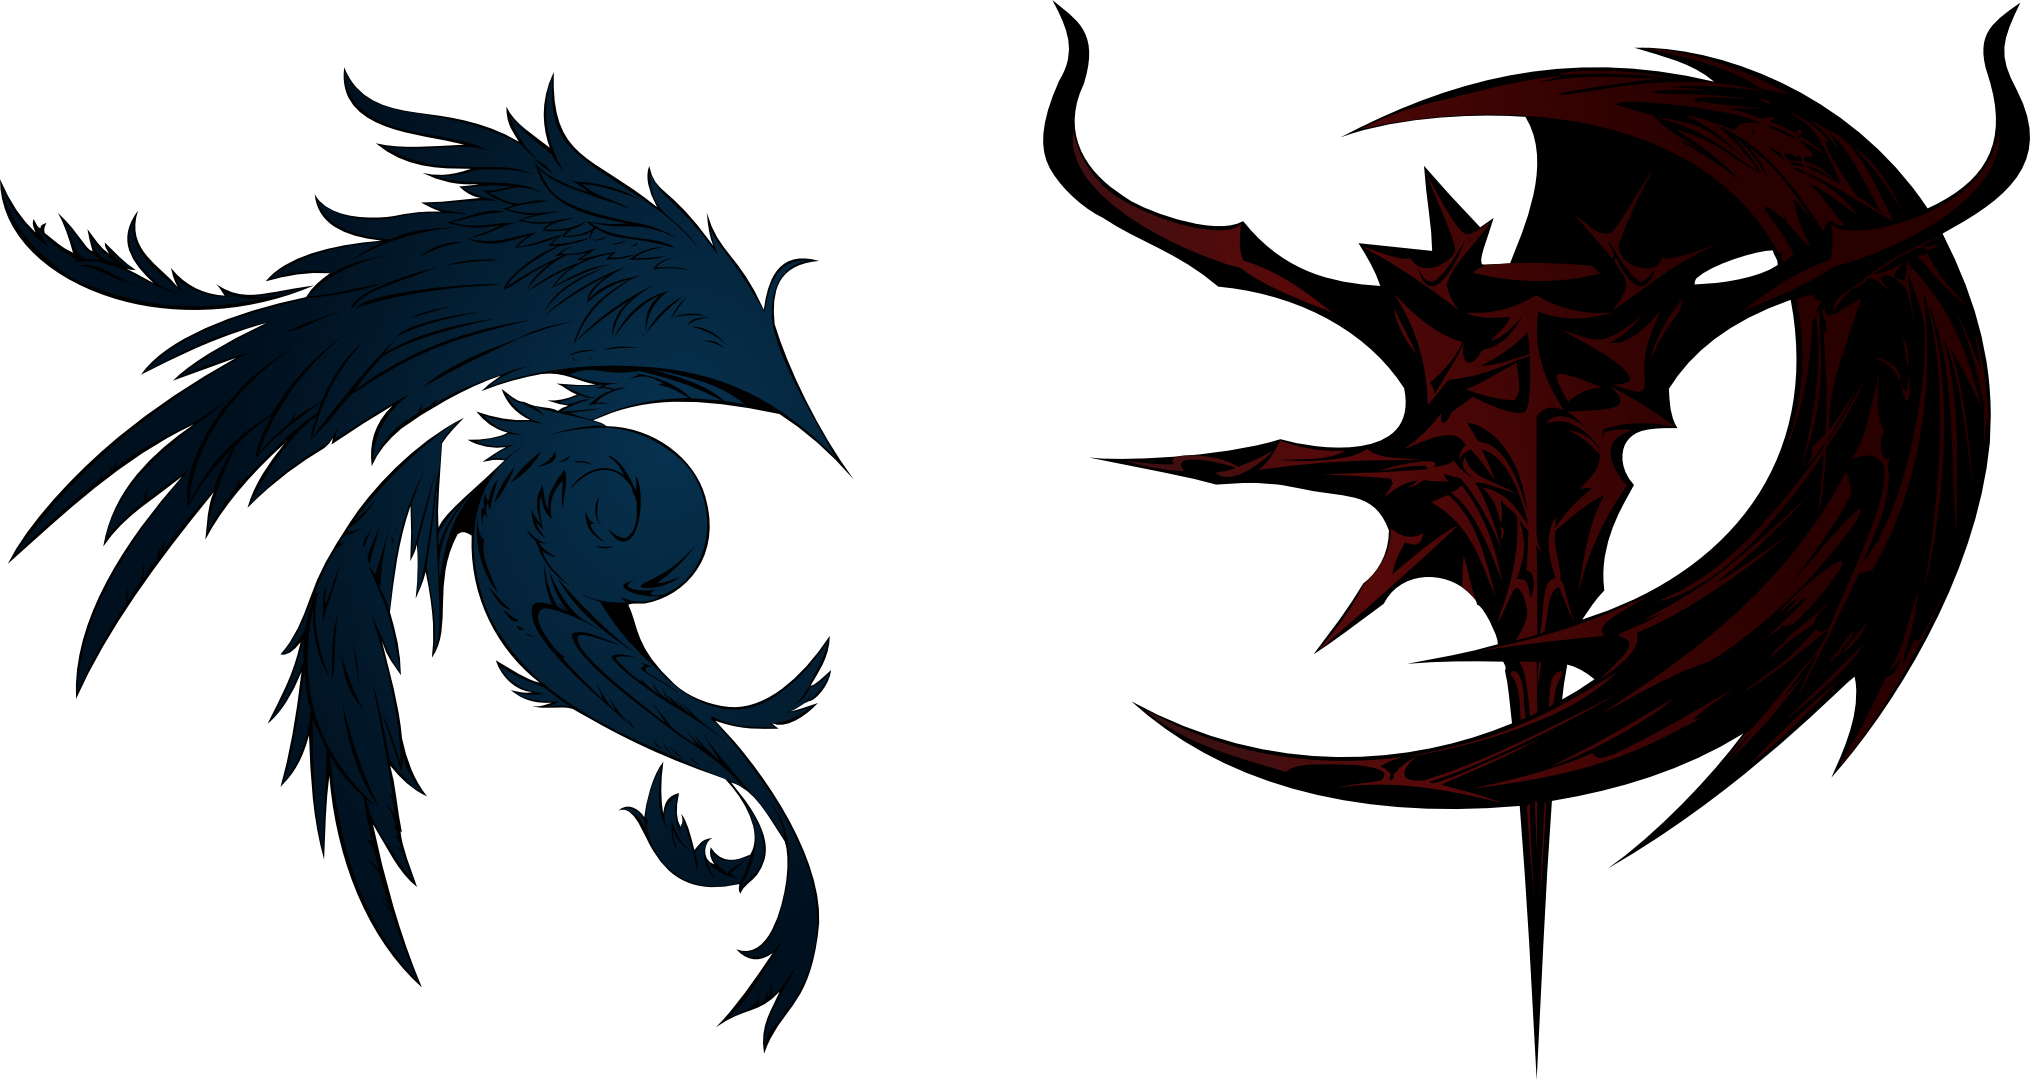 Dissidia Final Fantasy Cosmos and Chaos logos